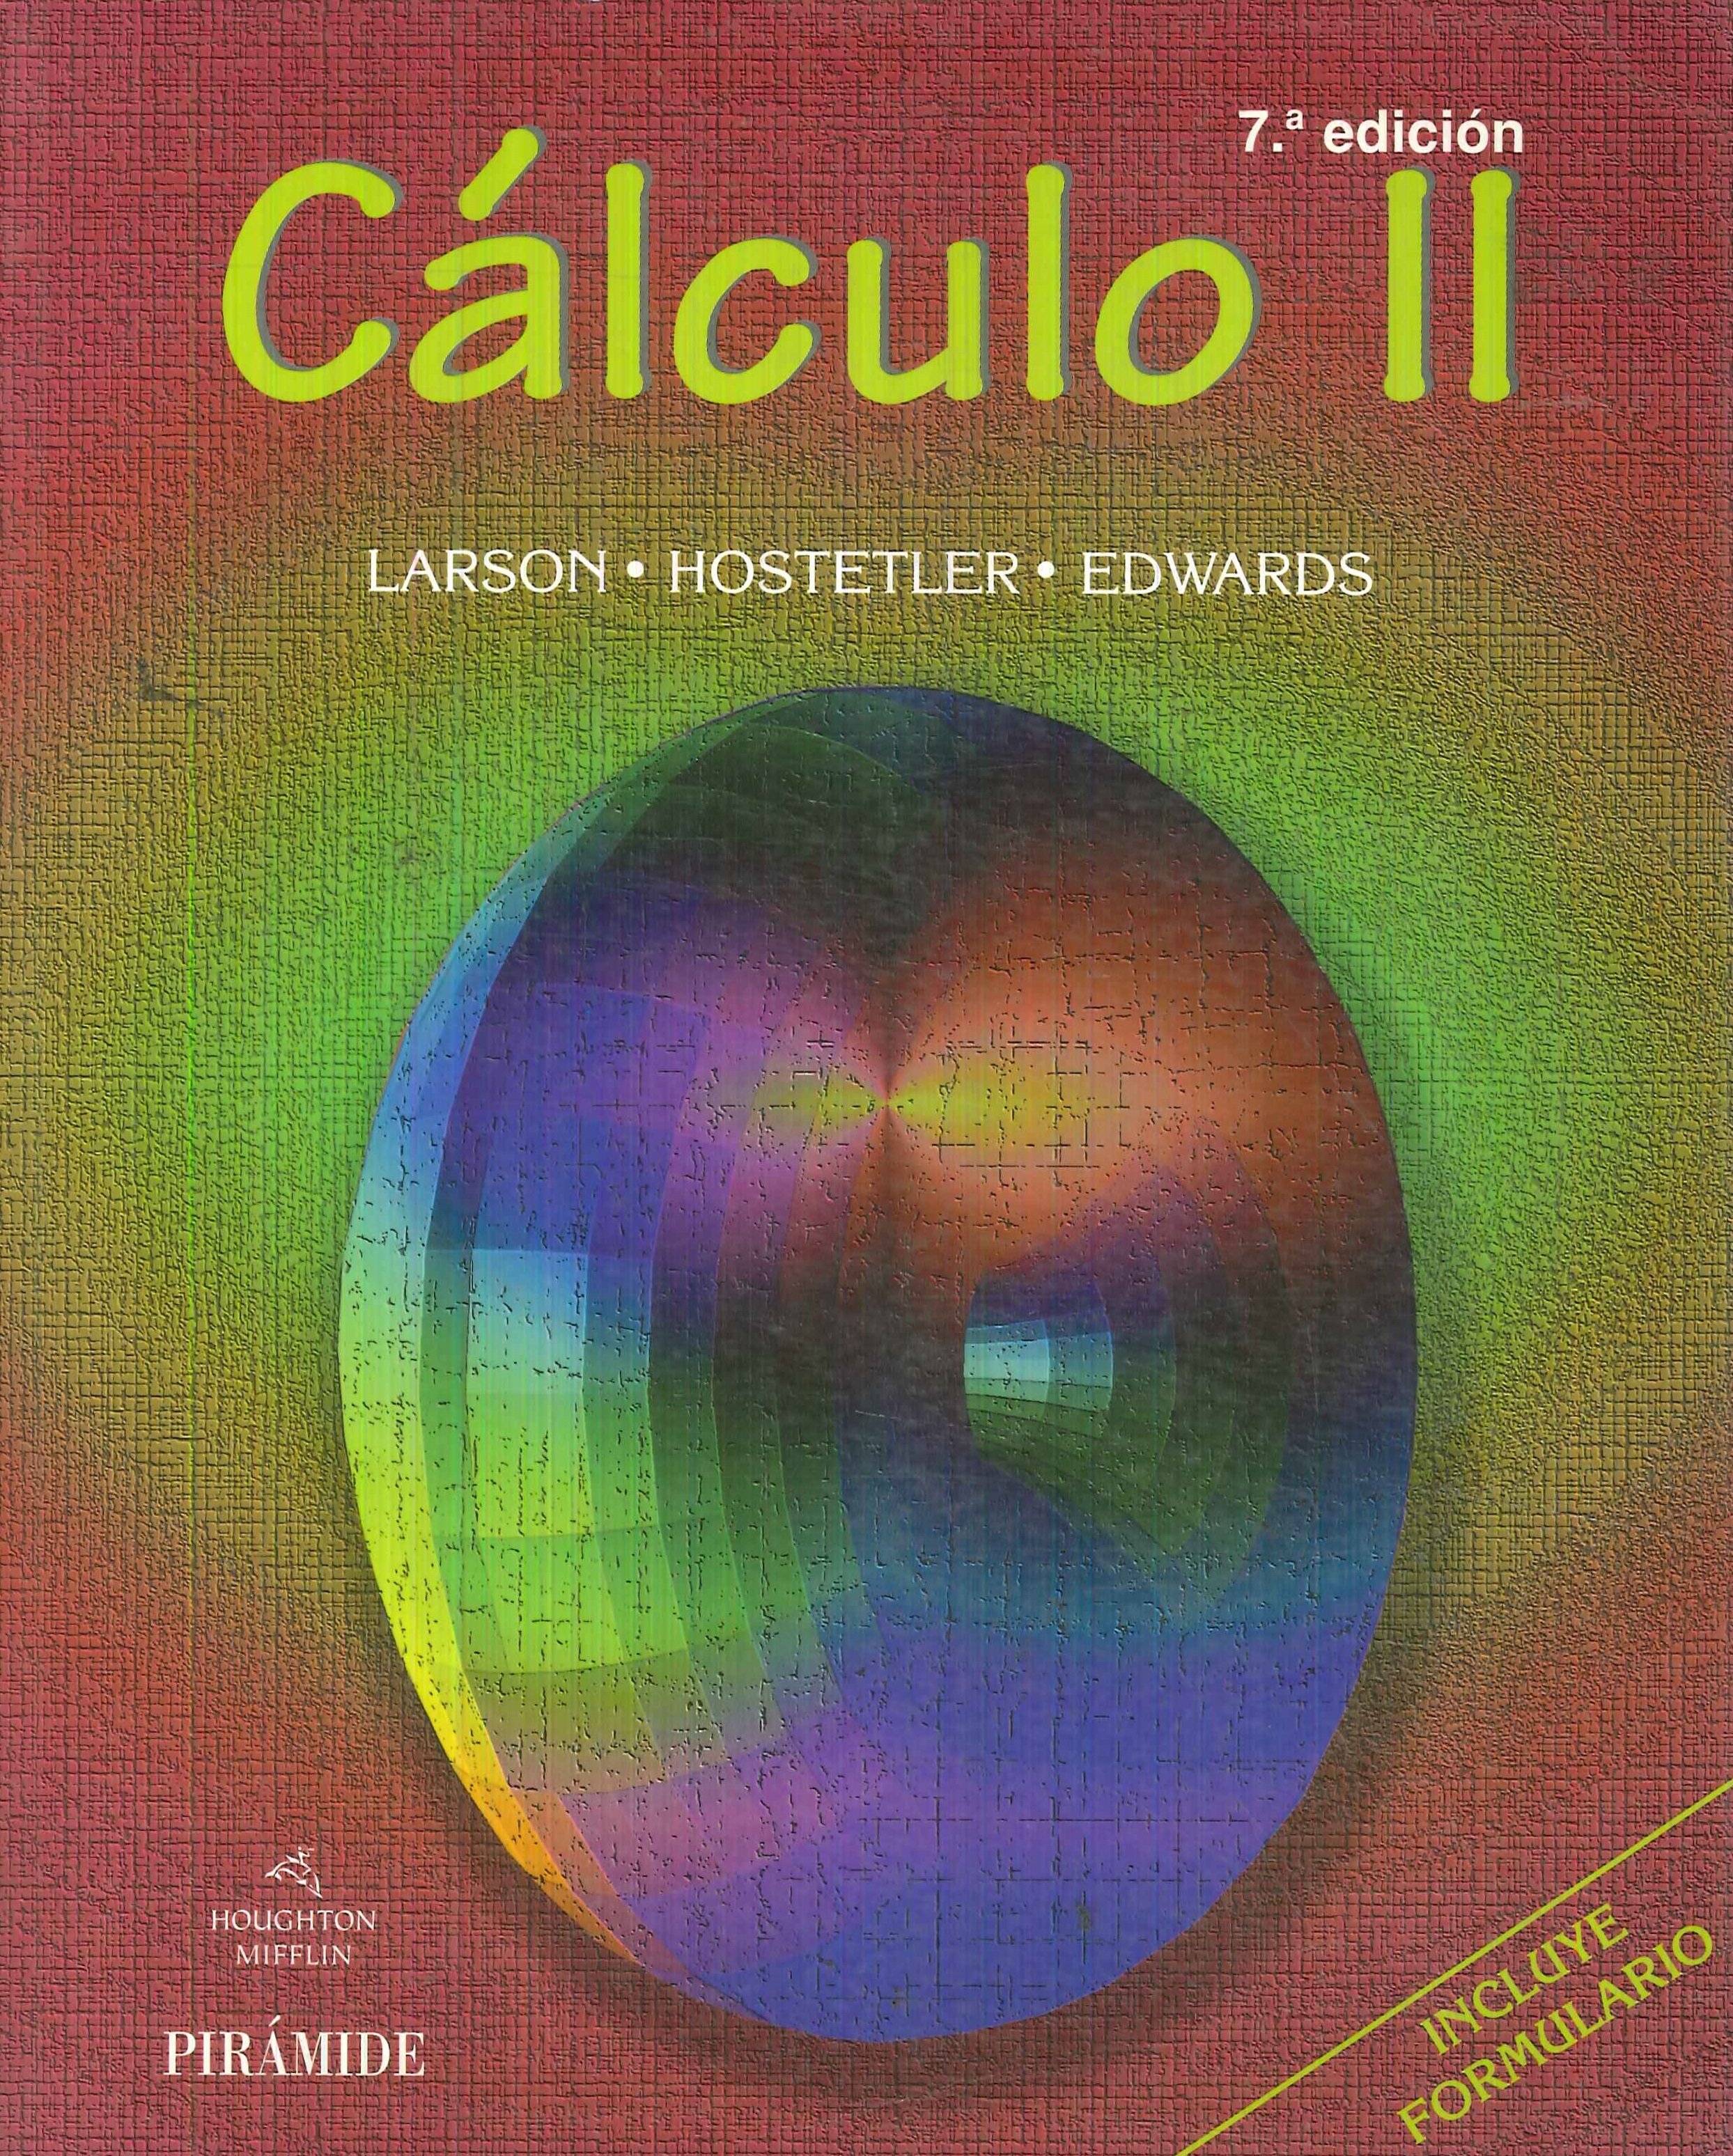 Calculo II